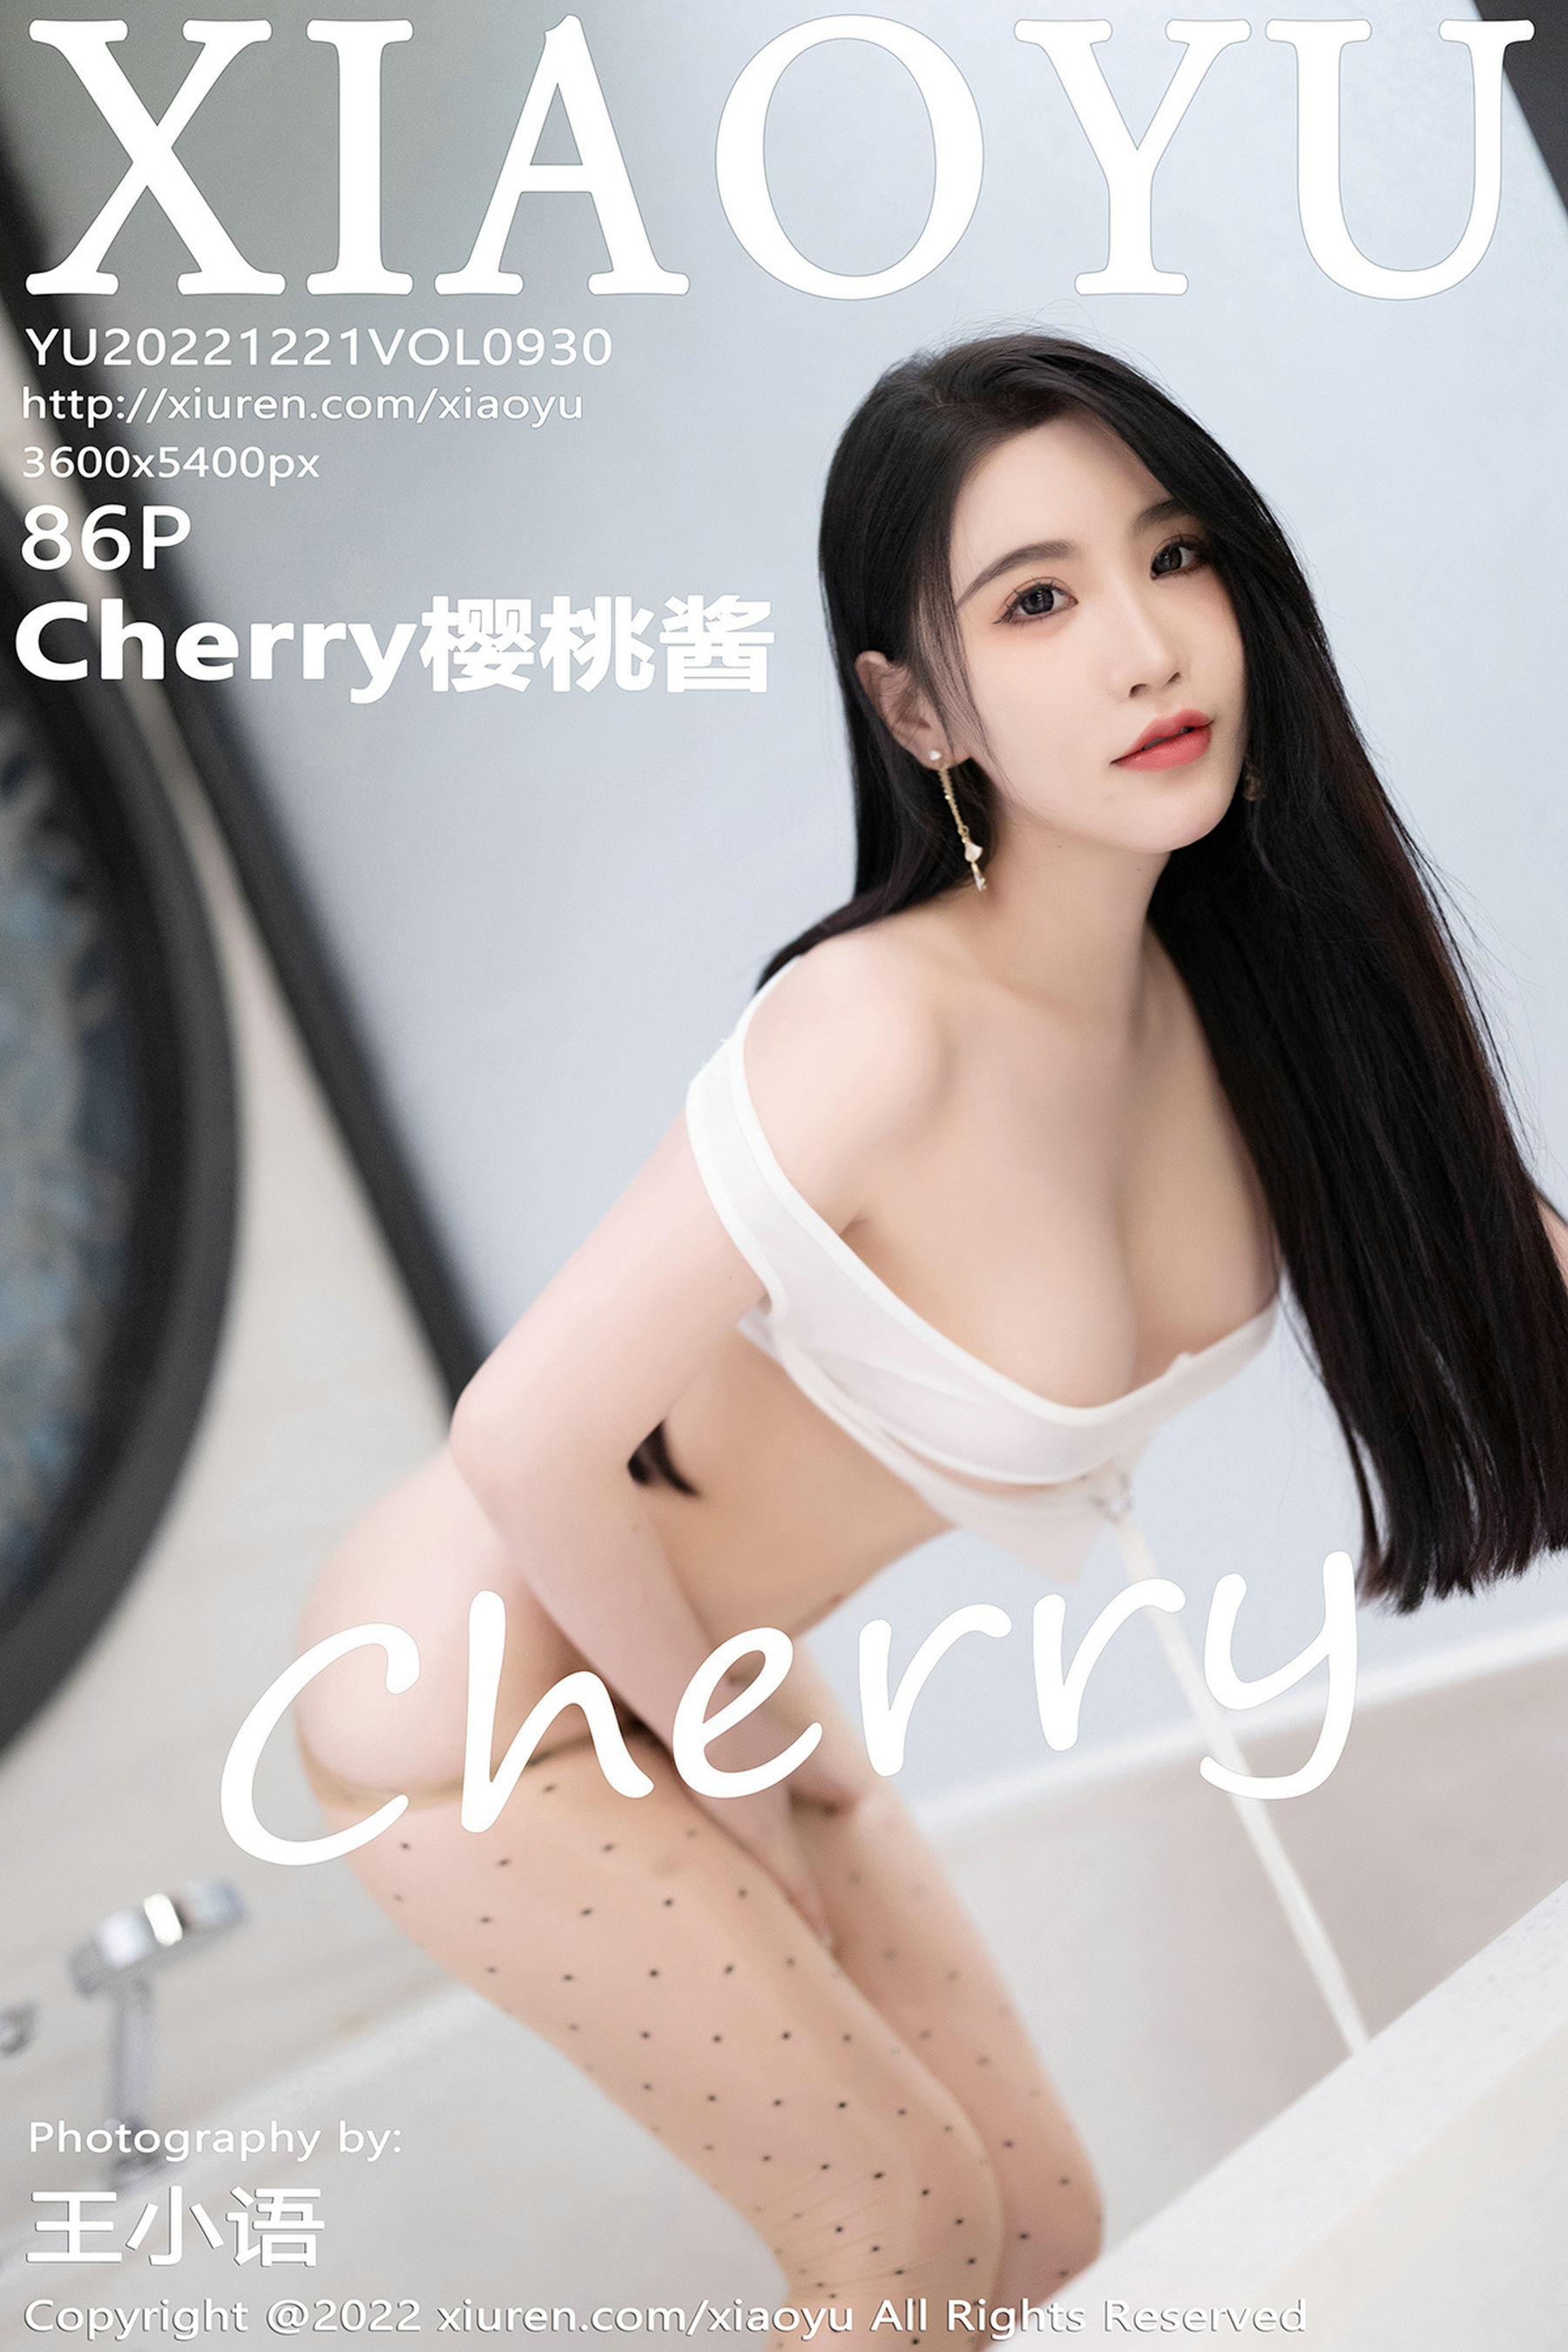 [语画界XIAOYU] Vol.930 Cherry樱桃酱/(87P)